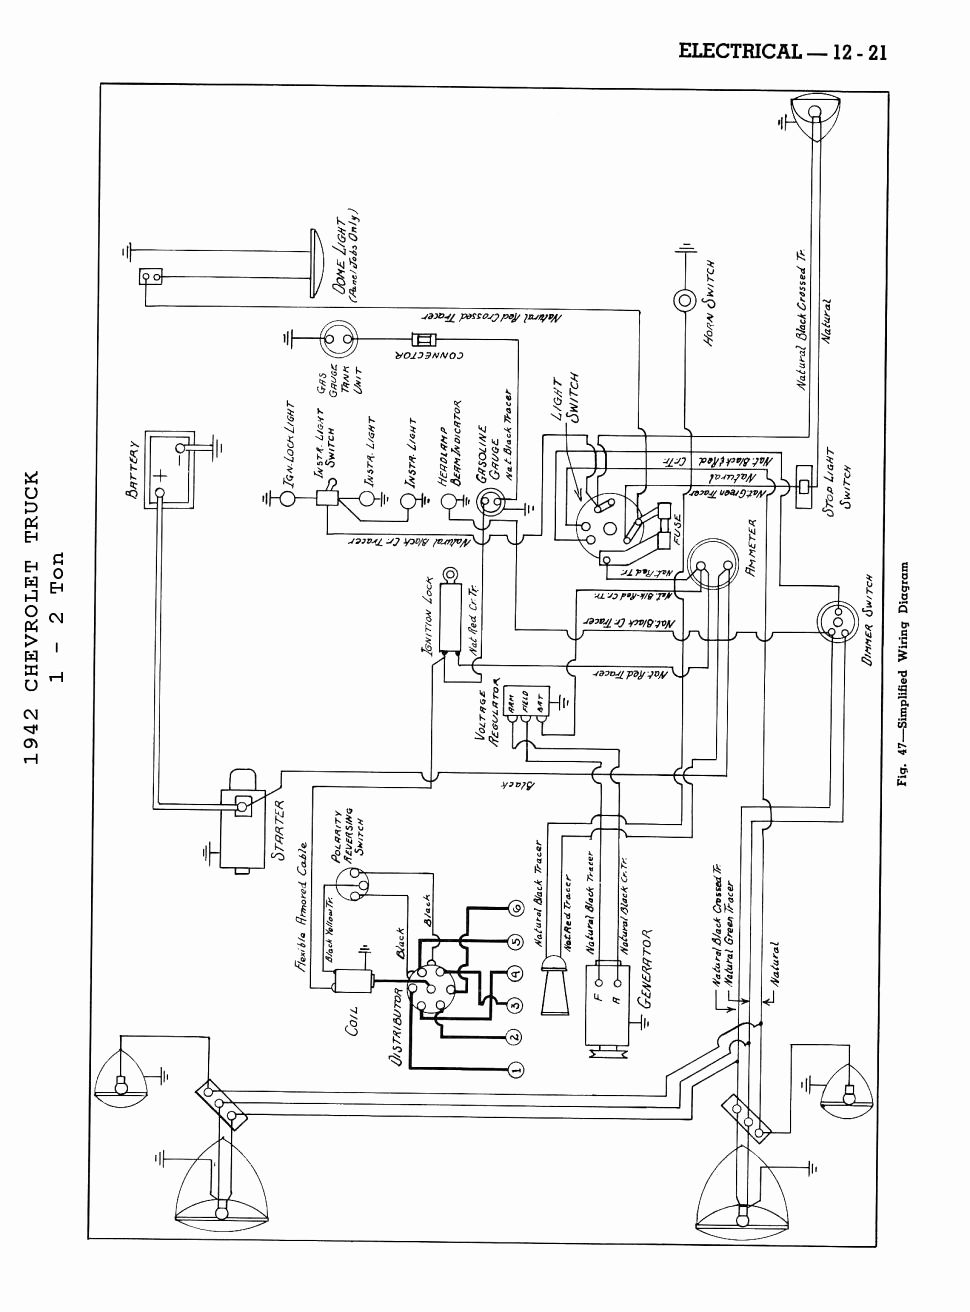 Coleman Mach Rv Thermostat Wiring Diagram Labeled | Wiring Diagram - Rv Thermostat Wiring Diagram